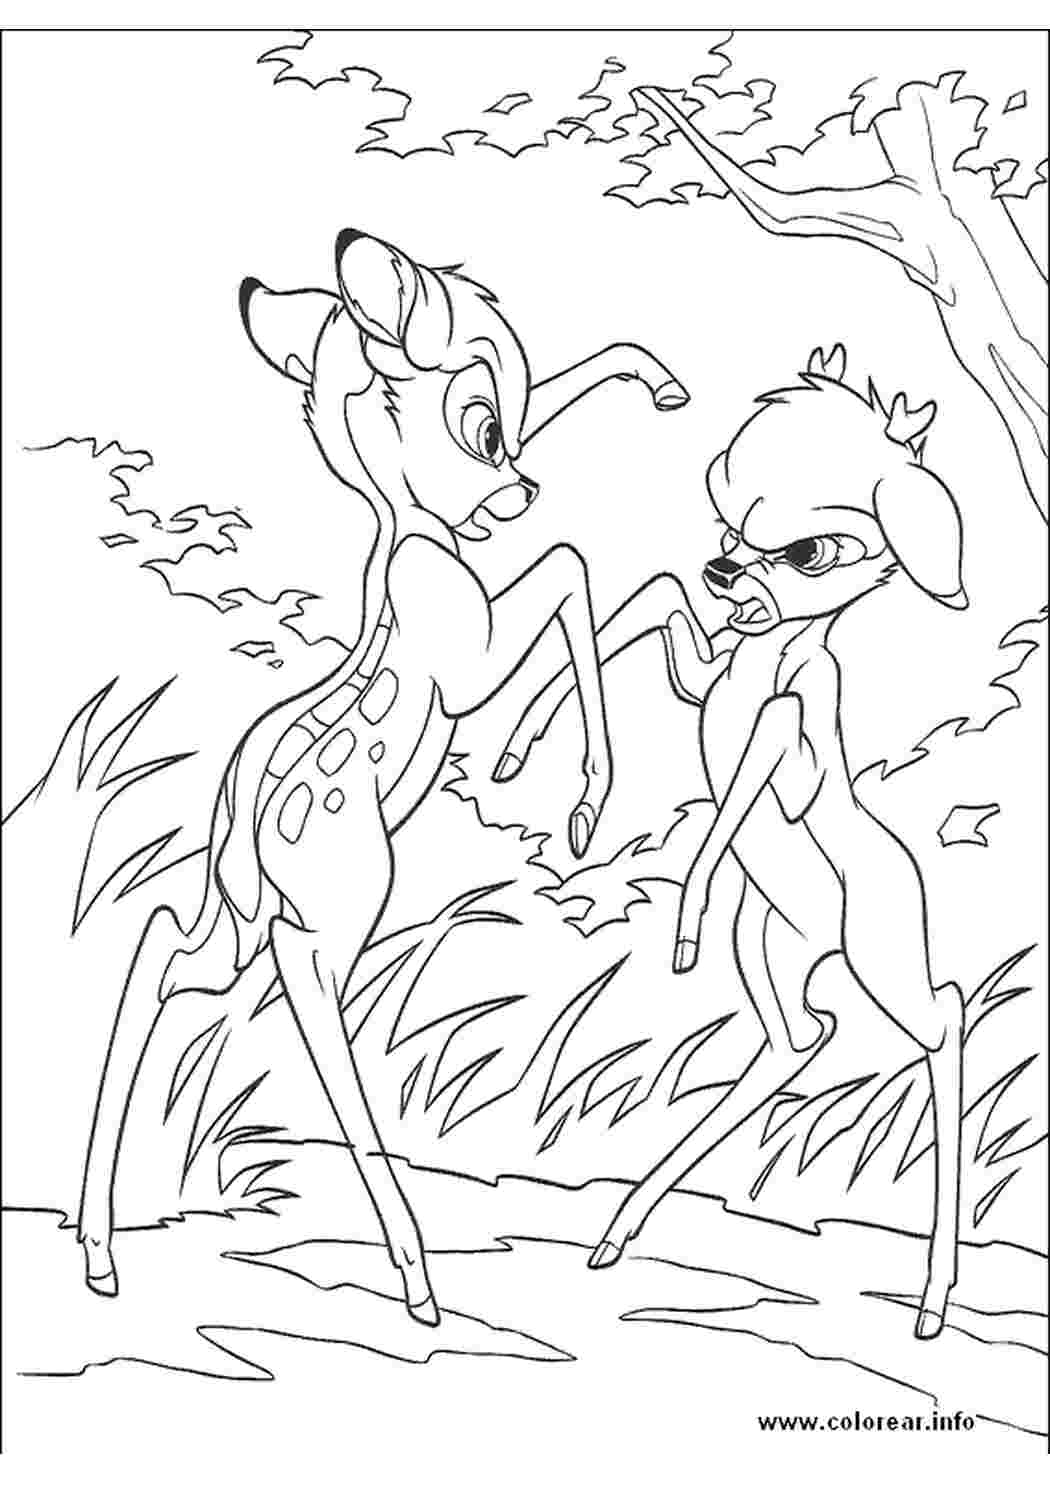 Раскраски Раскраски для детей, Два олененка дерутся Раскраски Walt Disney 